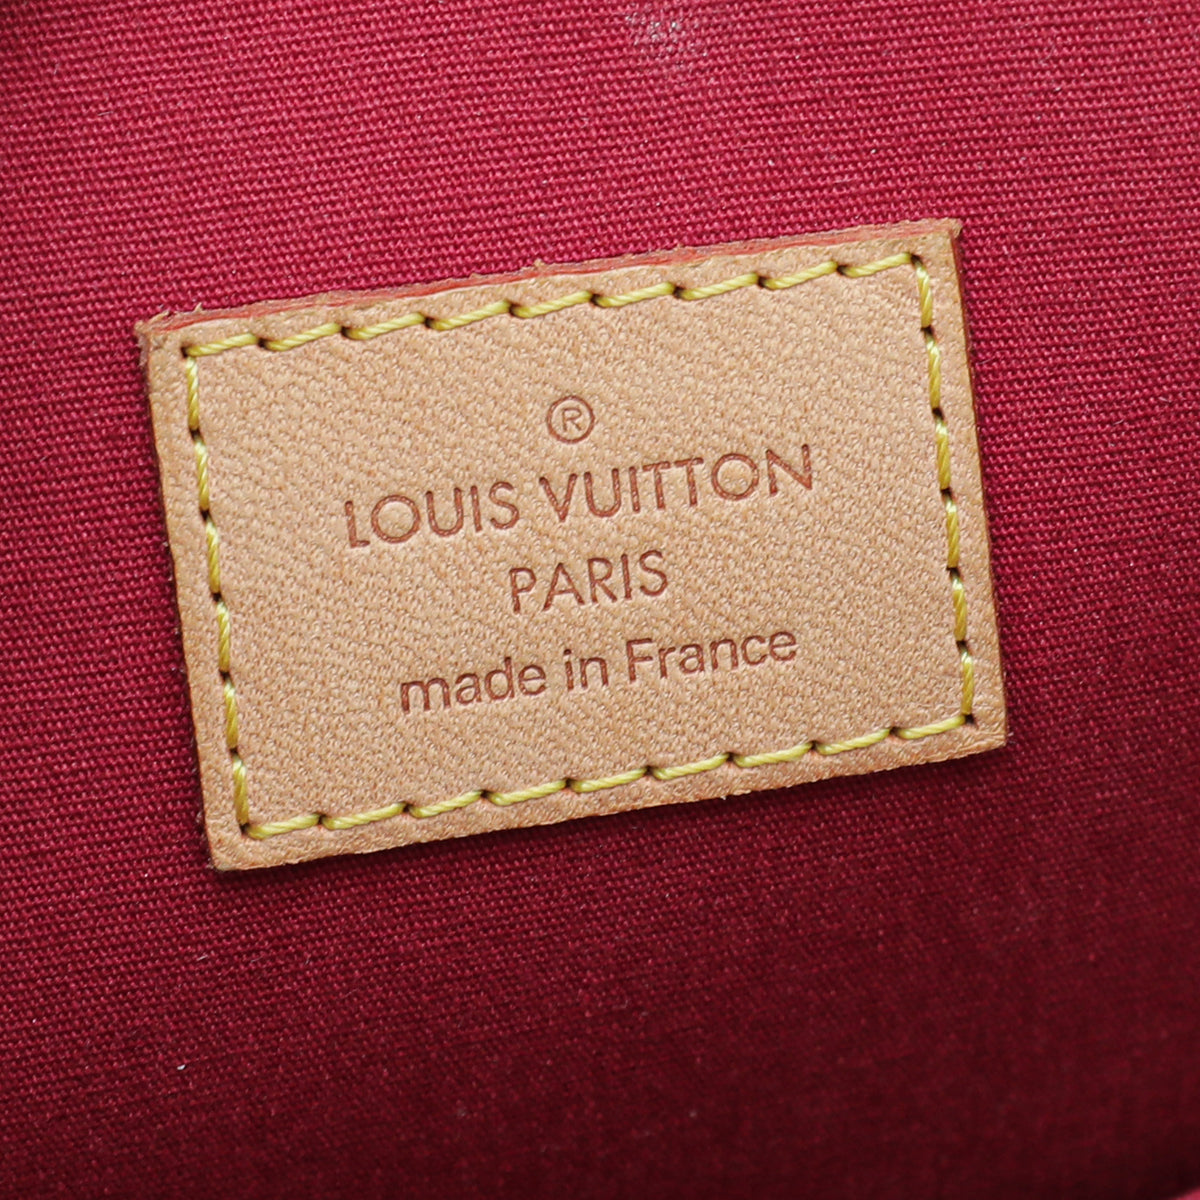 Louis Vuitton Pomme D'Amour Monogram Vernis Alma GM QJBHWE3AR3012